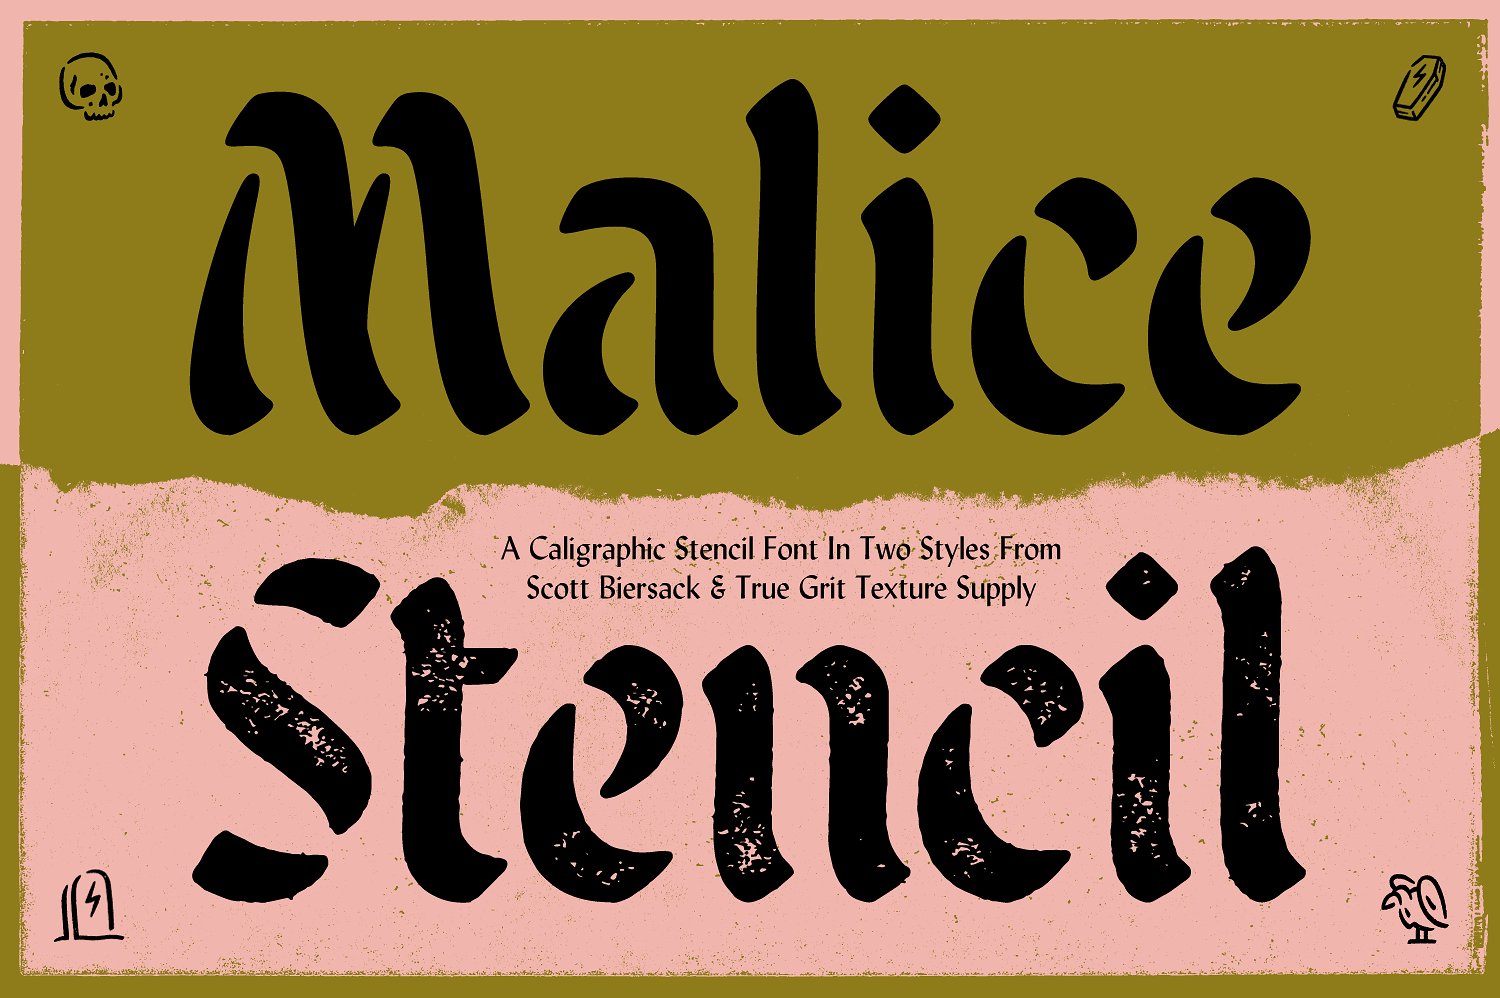 Malice Stencil cover image.